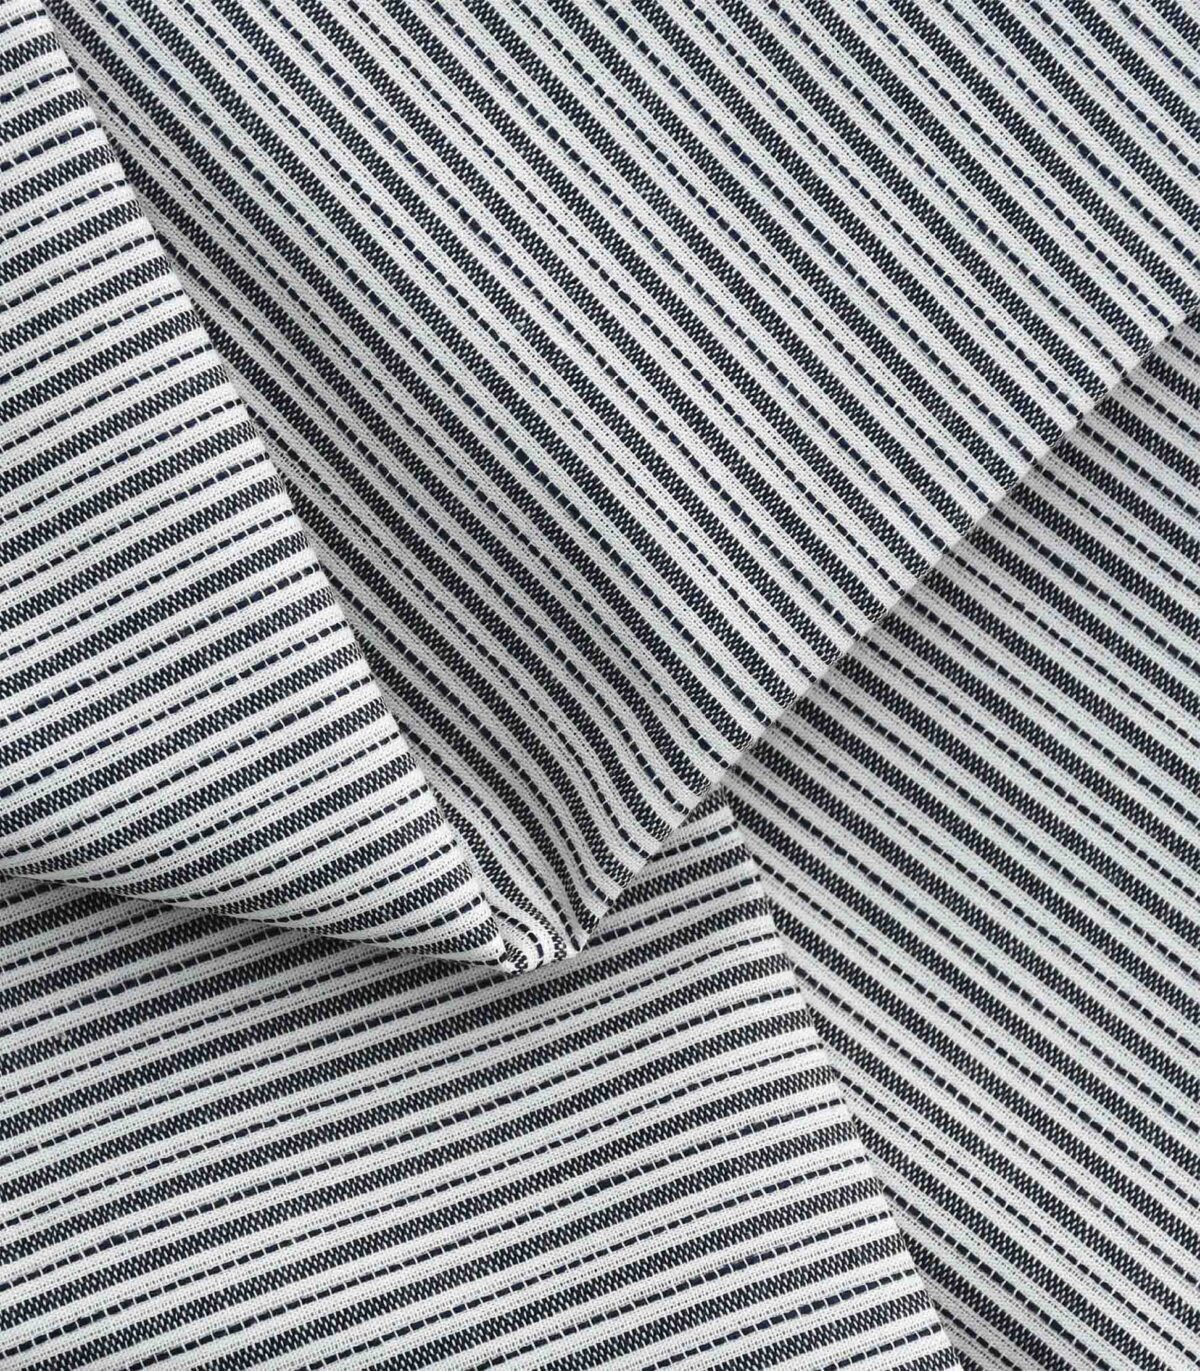 B&W Yarn Dyed Stripe Fabric